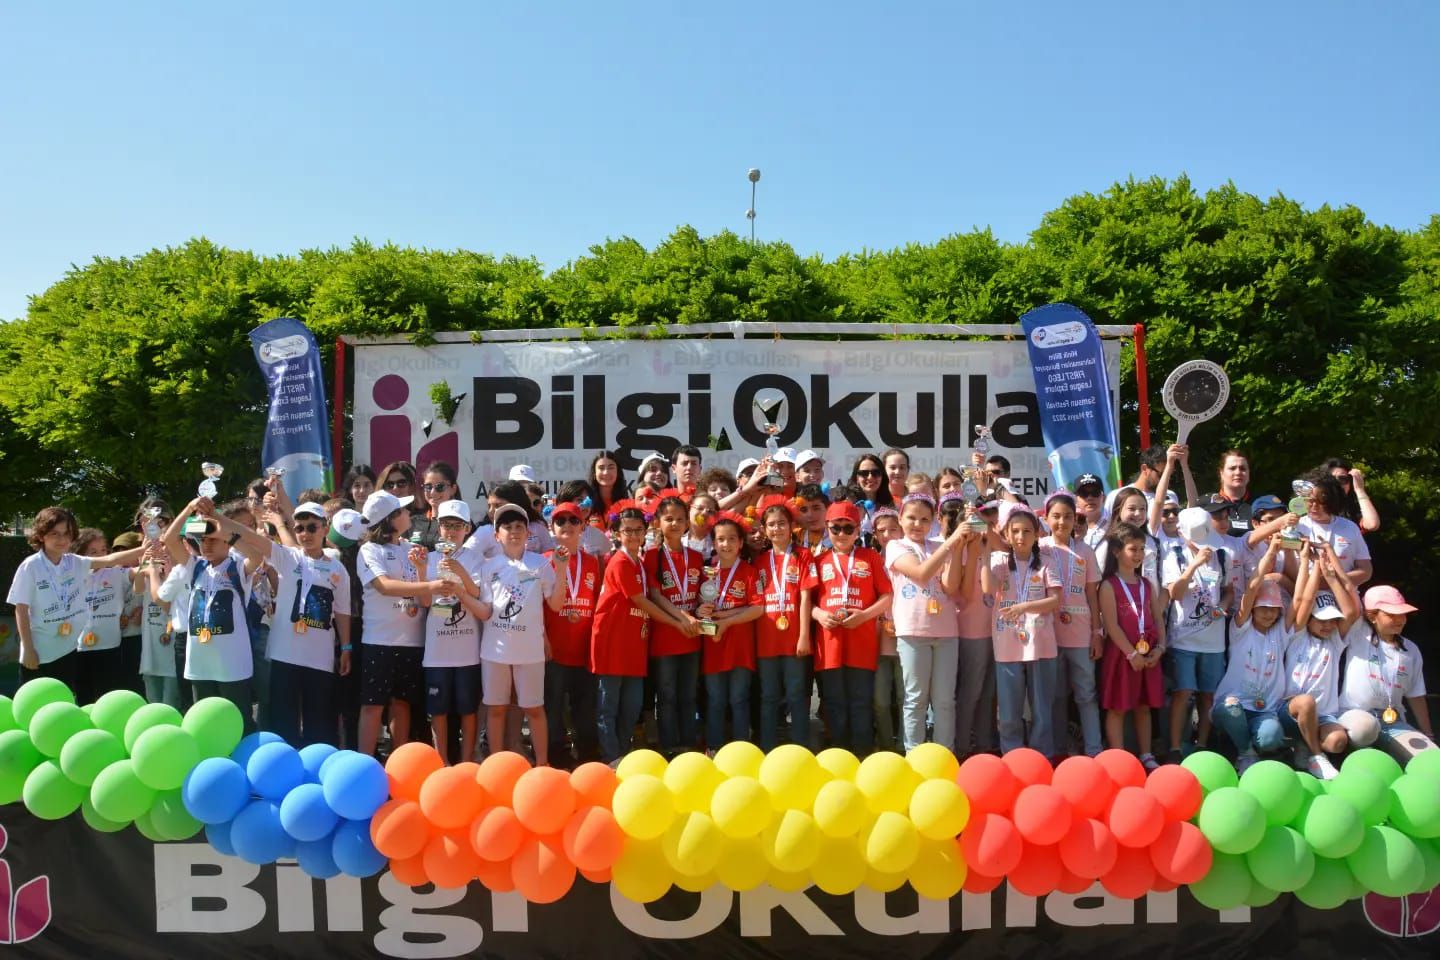 Minik Bilim Kahramanlarının 29 mayıs Pazar günkü durağı Samsun Özel Artı Bilgi Okulları oldu.